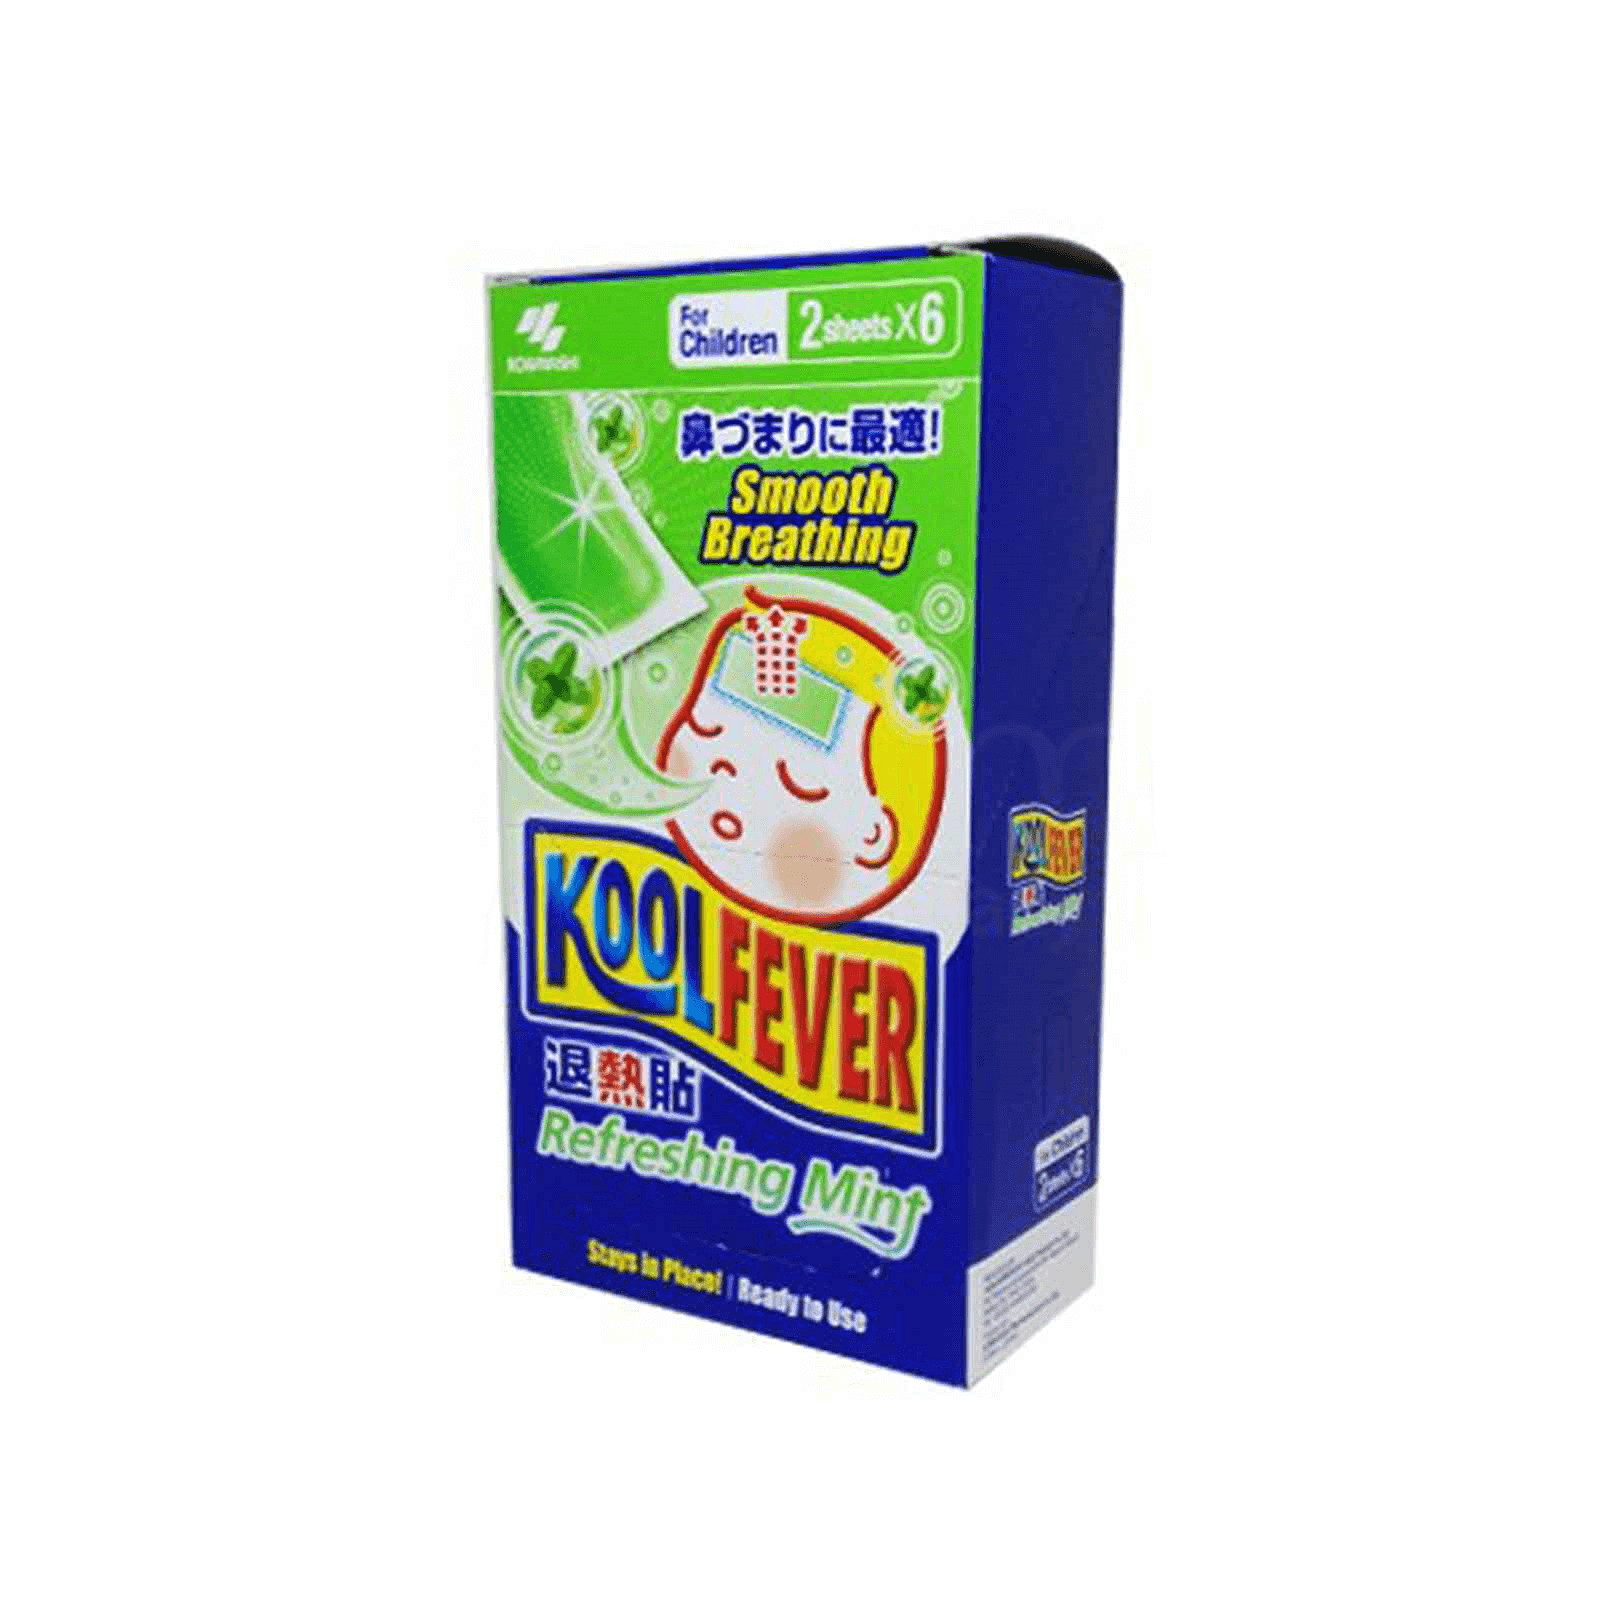 Koolfever Refreshing Mint For Children 2's x 3